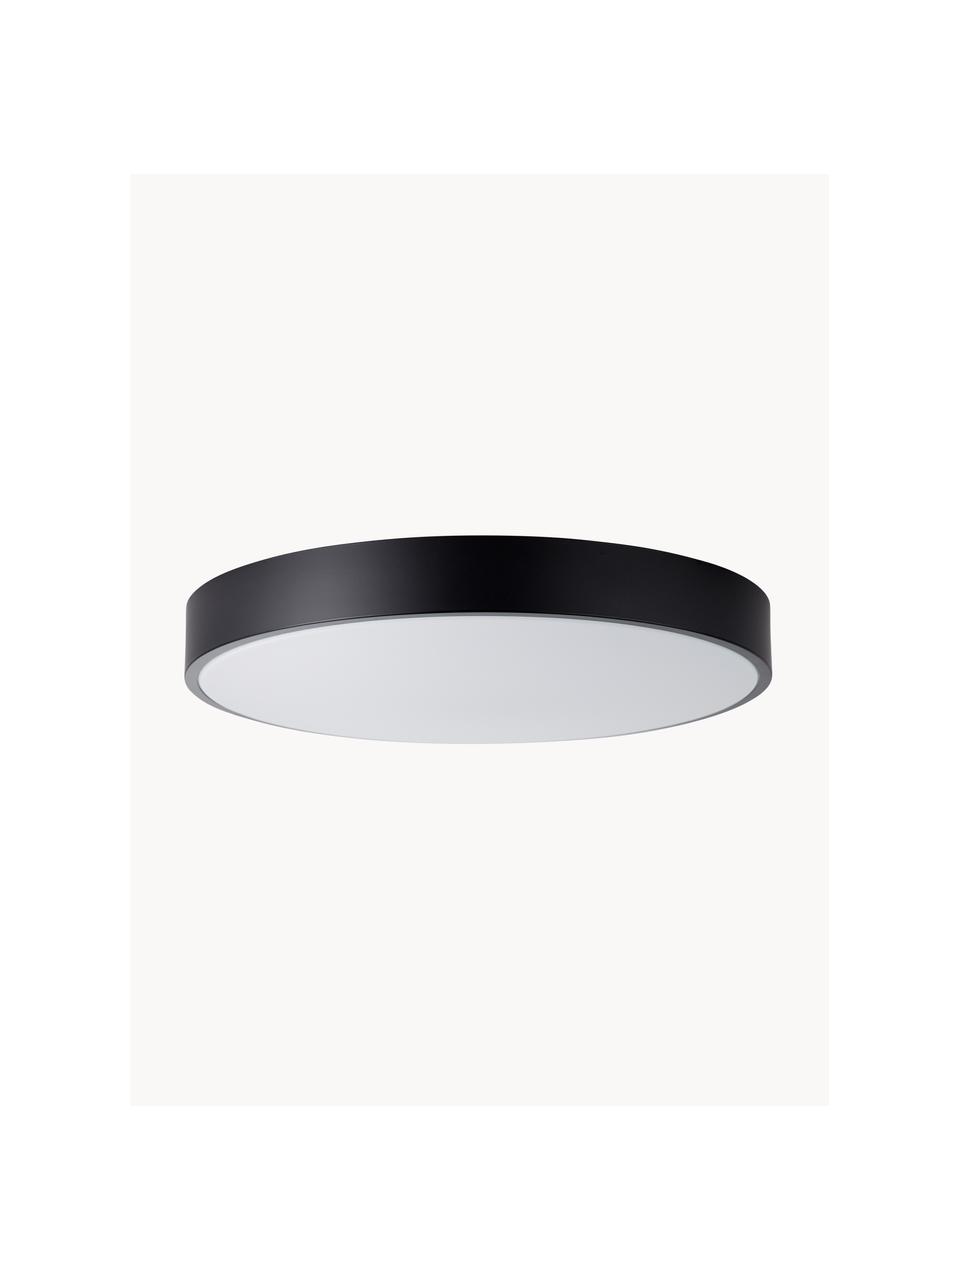 Stropní LED svítidlo Slimline, Černá, bílá, Ø 49 cm, V 9 cm